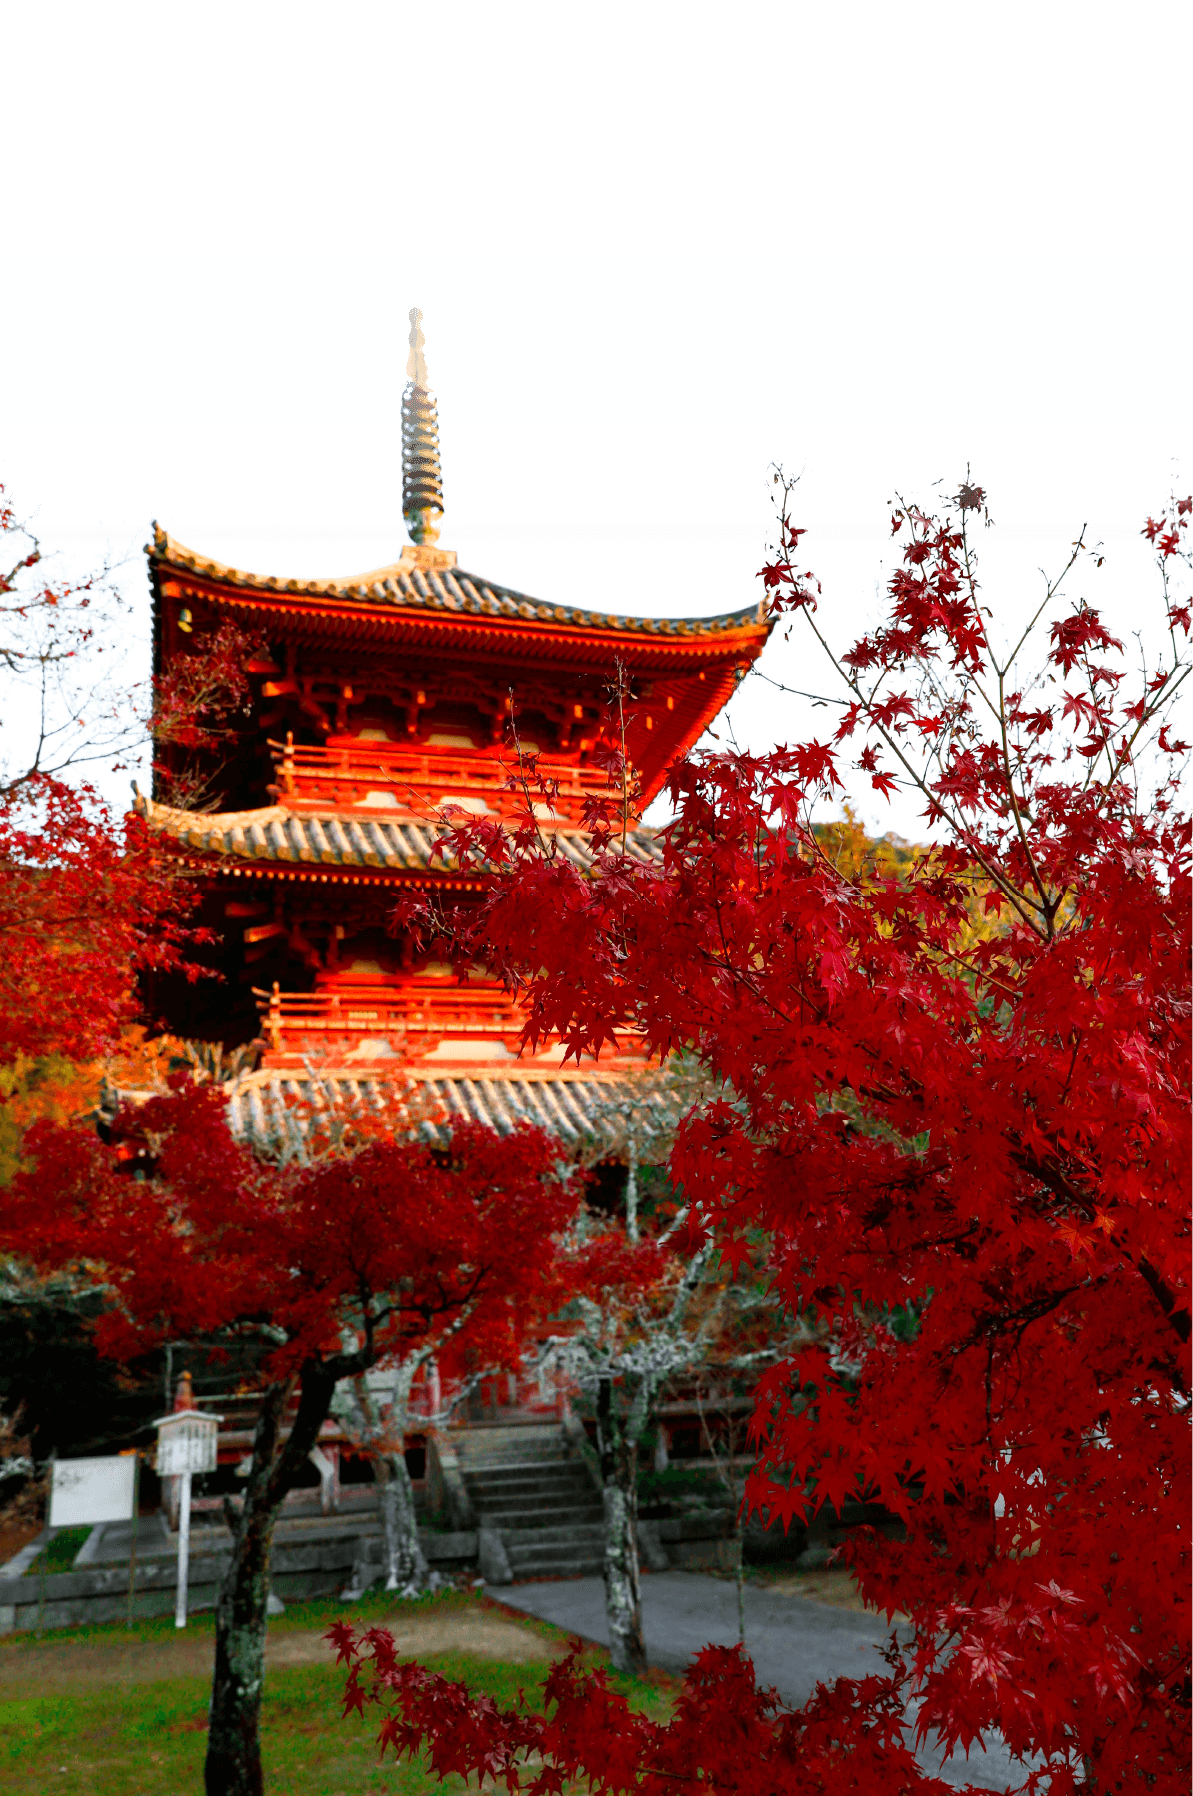 国宝太山寺